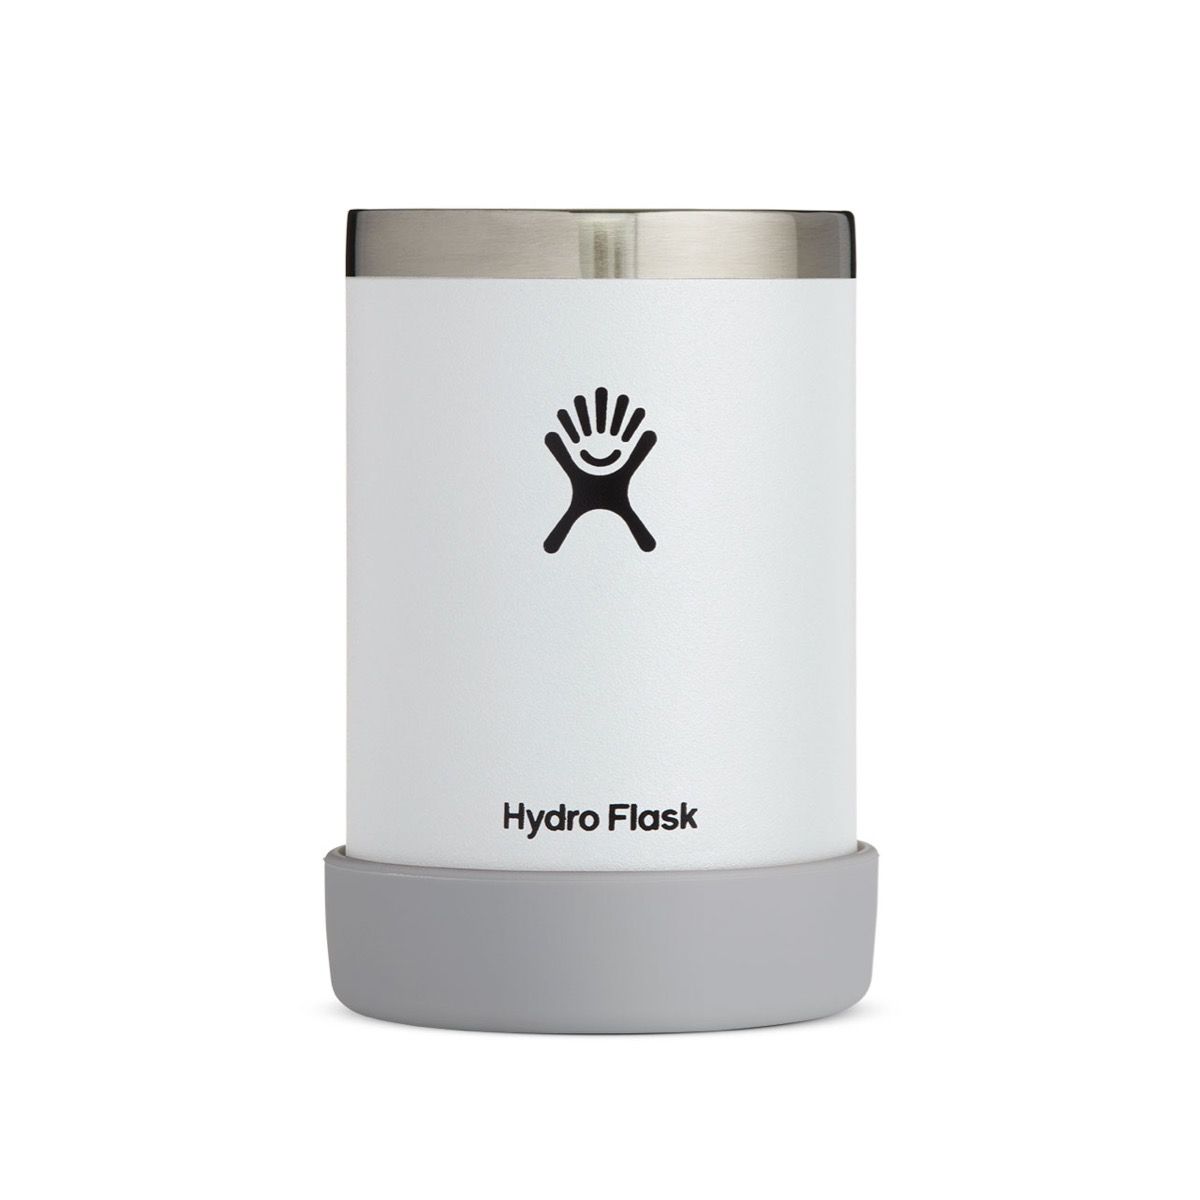 Hydro Flask 10oz Wine Tumbler White